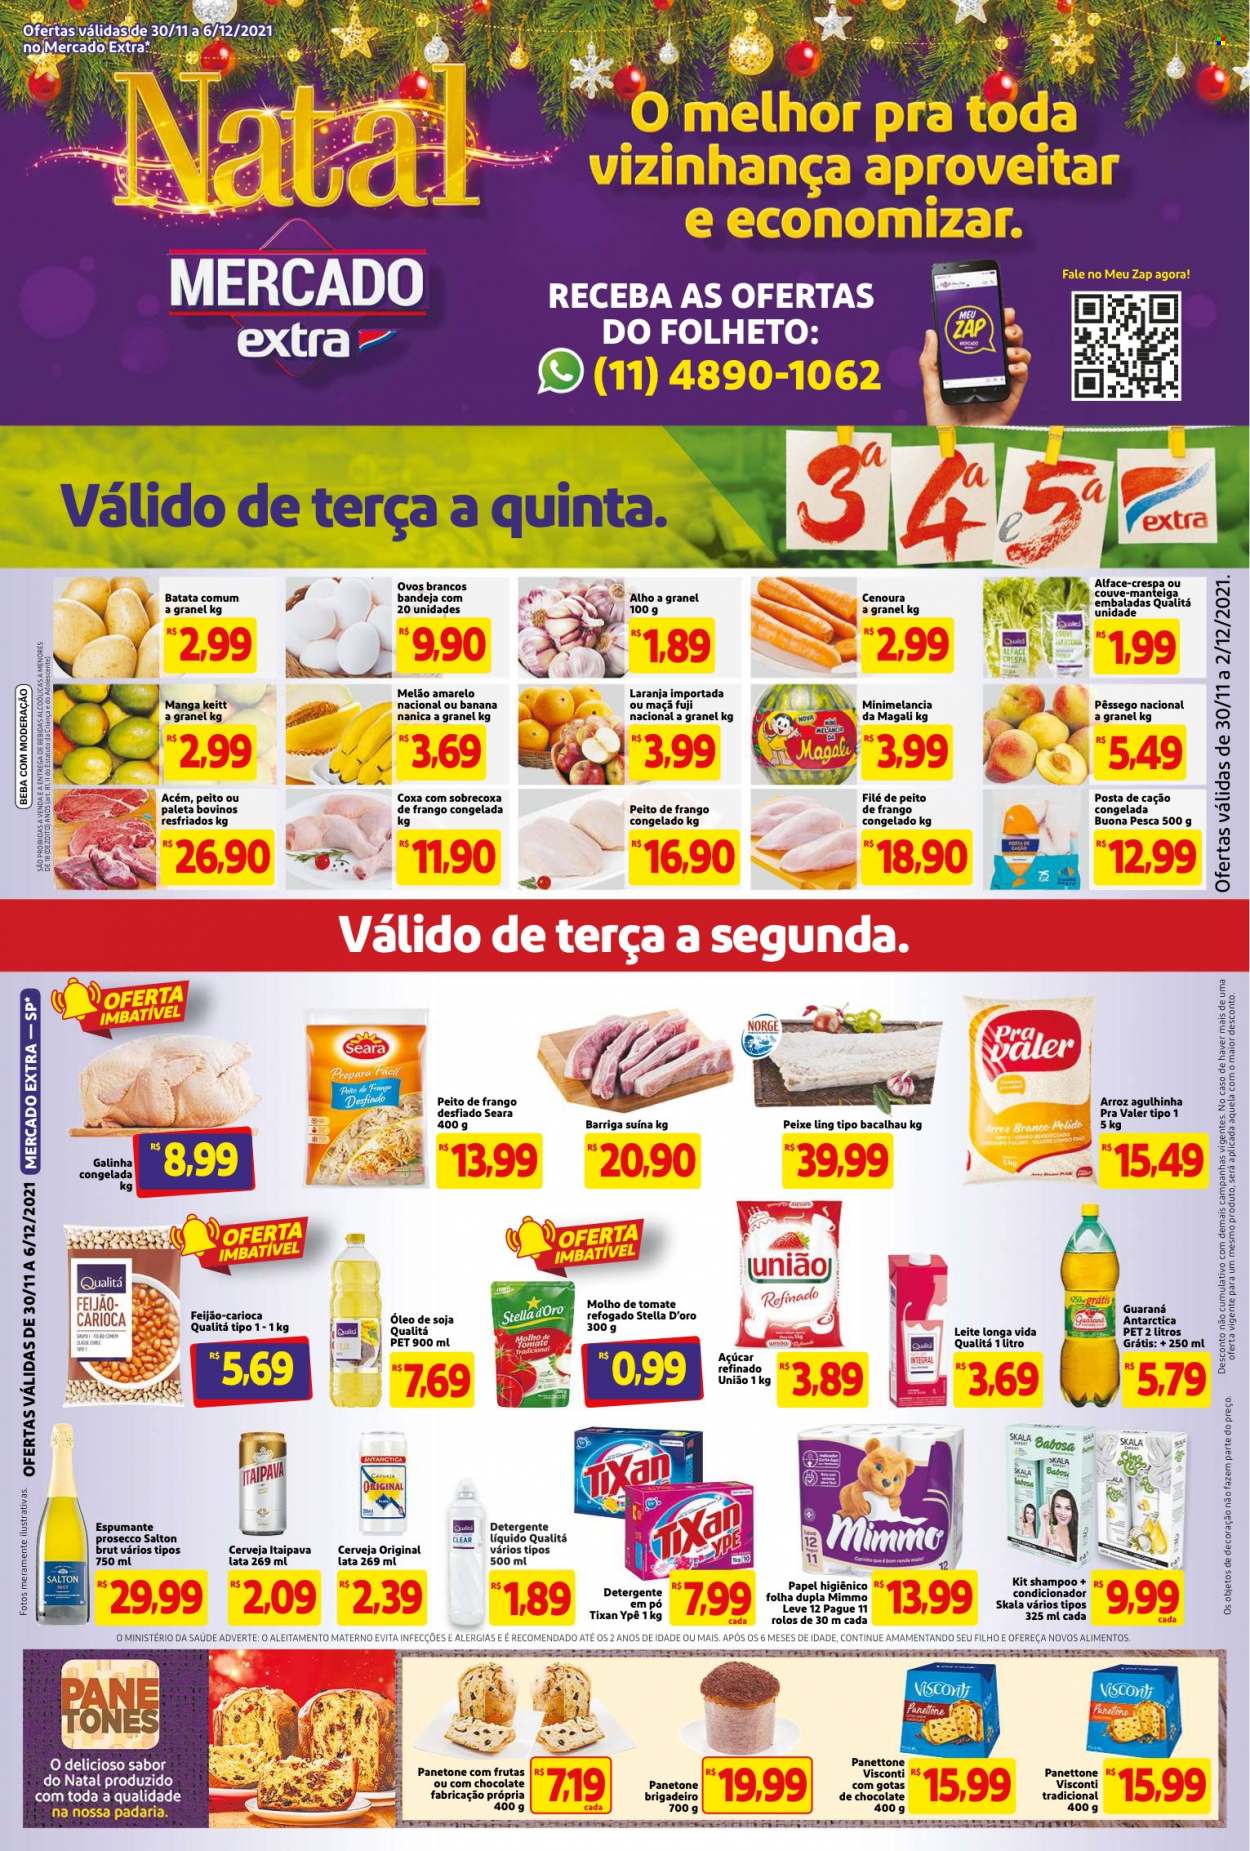 Encarte Mercado Extra  - 30.11.2021 - 06.12.2021.